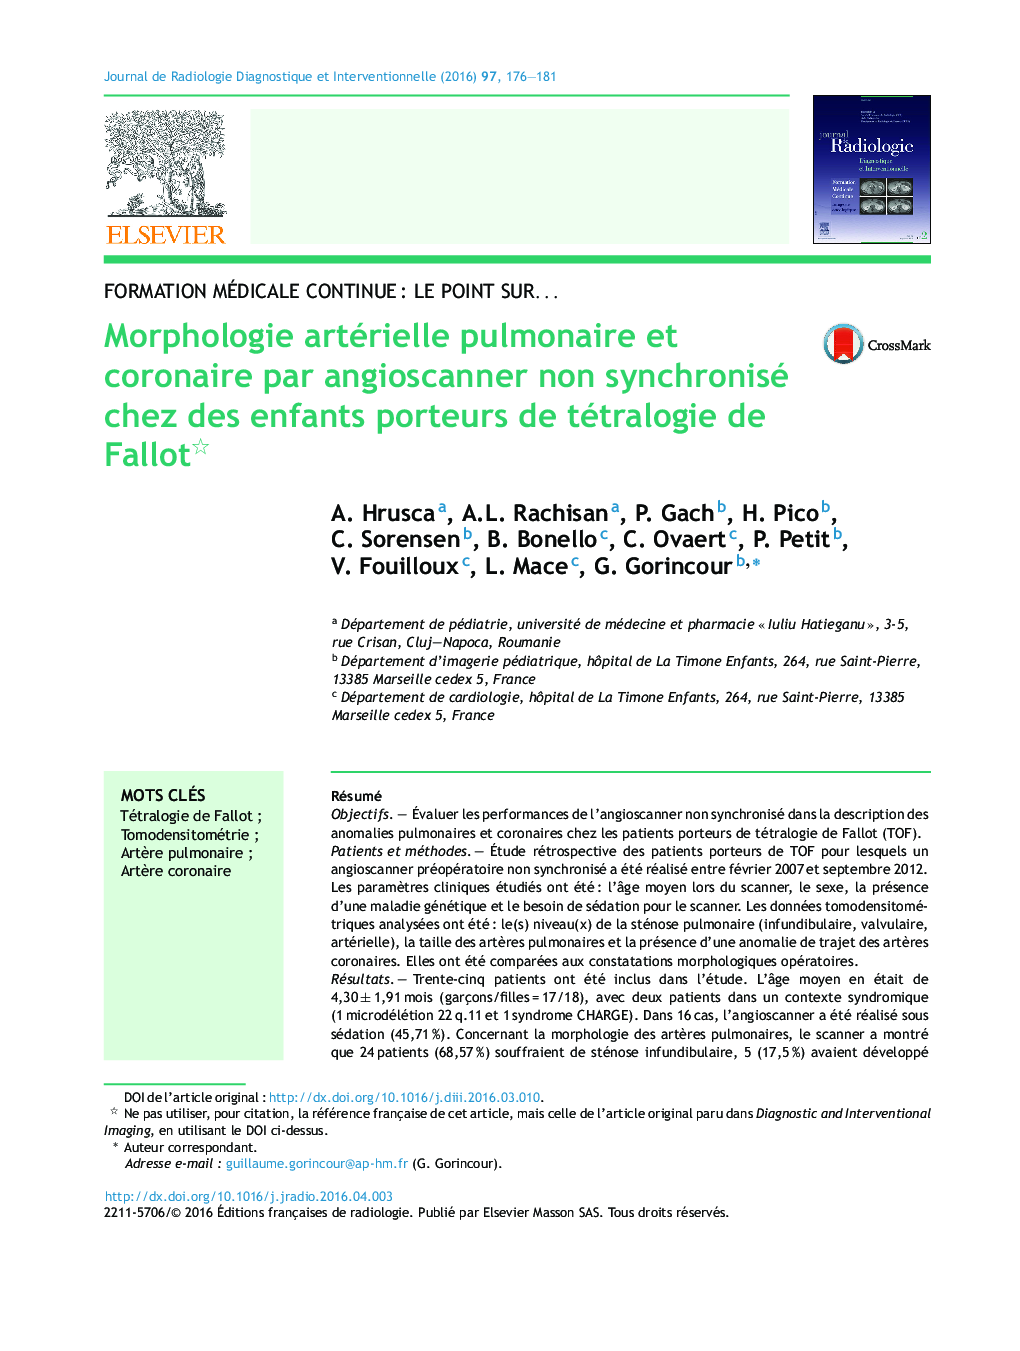 Morphologie artérielle pulmonaire et coronaire par angioscanner non synchronisé chez des enfants porteurs de tétralogie de Fallot